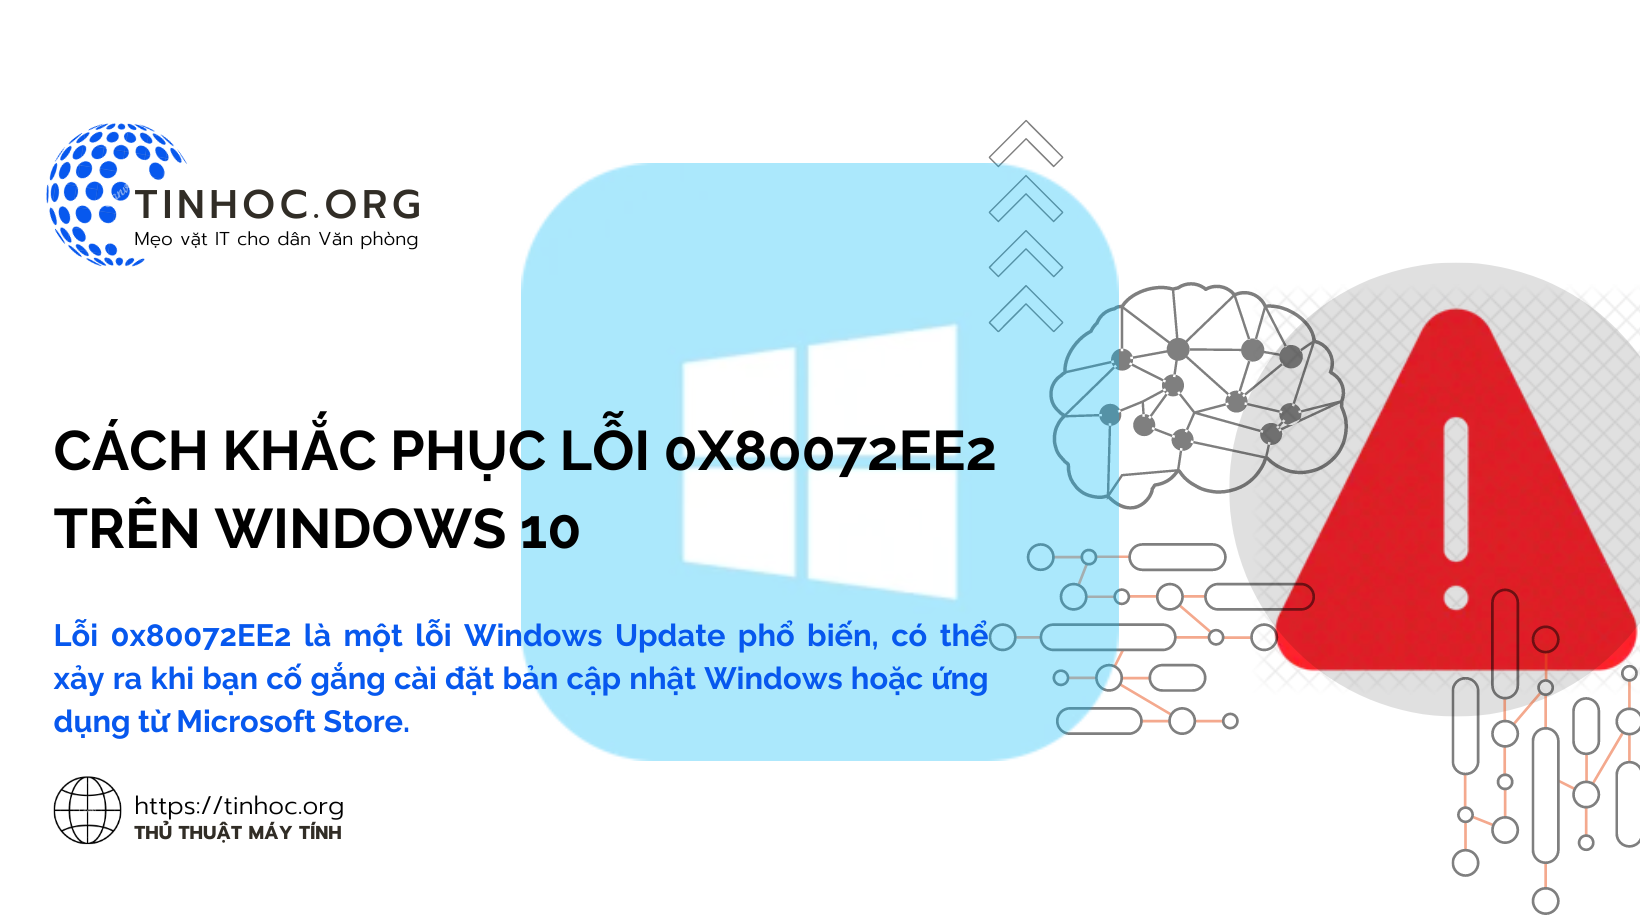 Lỗi 0x80072EE2 là một lỗi Windows Update phổ biến, có thể xảy ra khi bạn cố gắng cài đặt bản cập nhật Windows hoặc ứng dụng từ Microsoft Store.